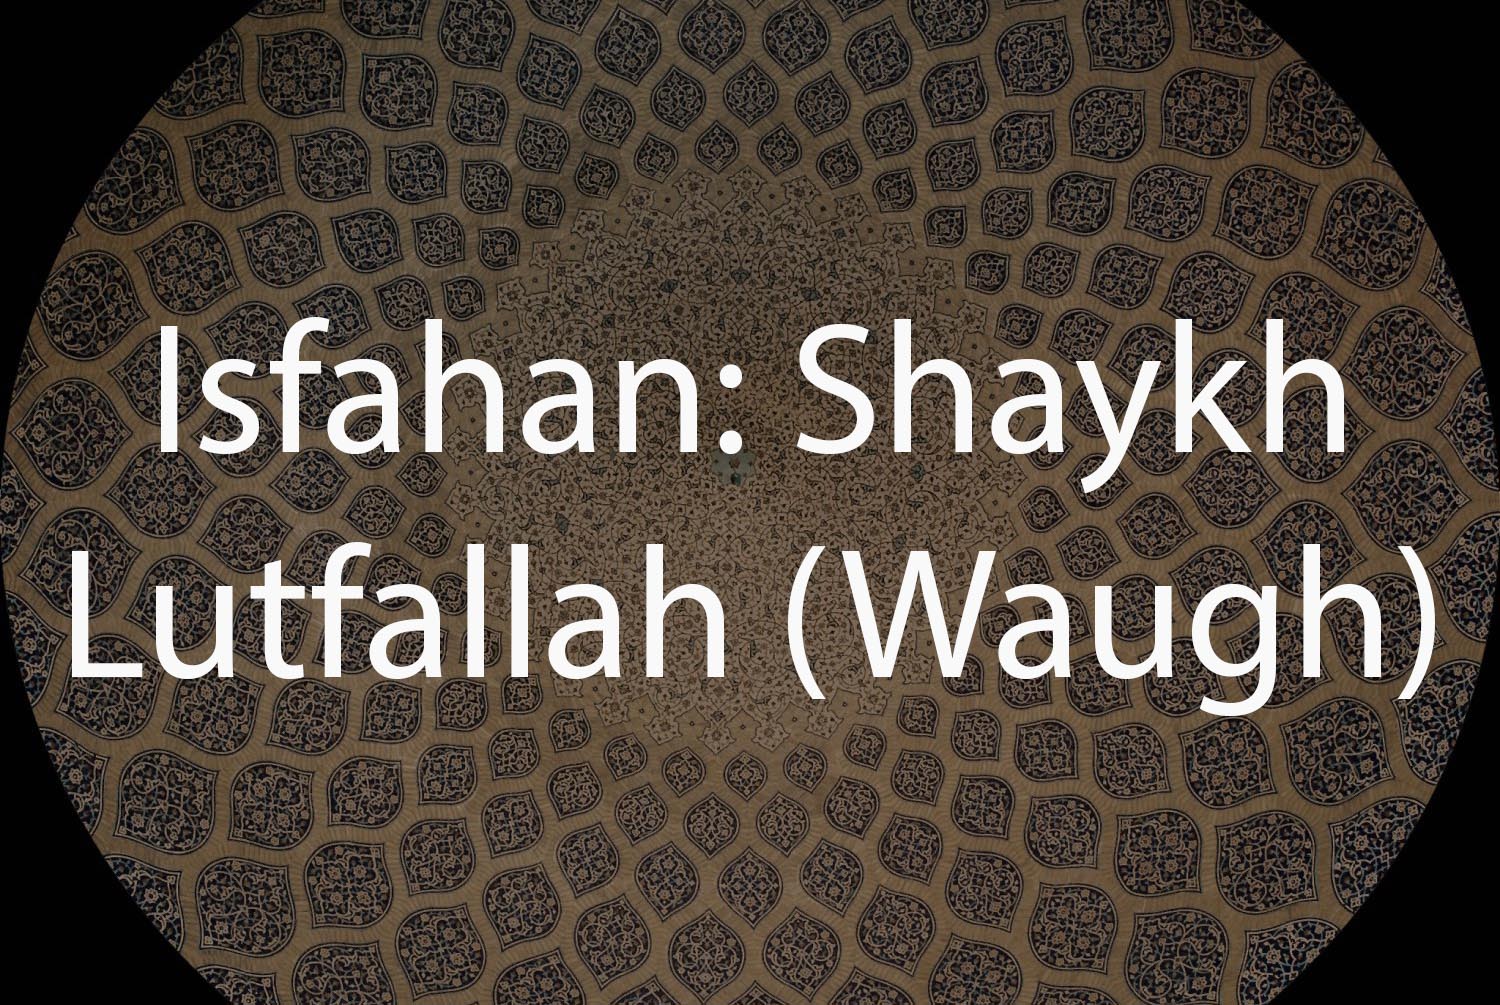 Iran: Isfahan: Shaykh Lutfallah (Waugh Collection)